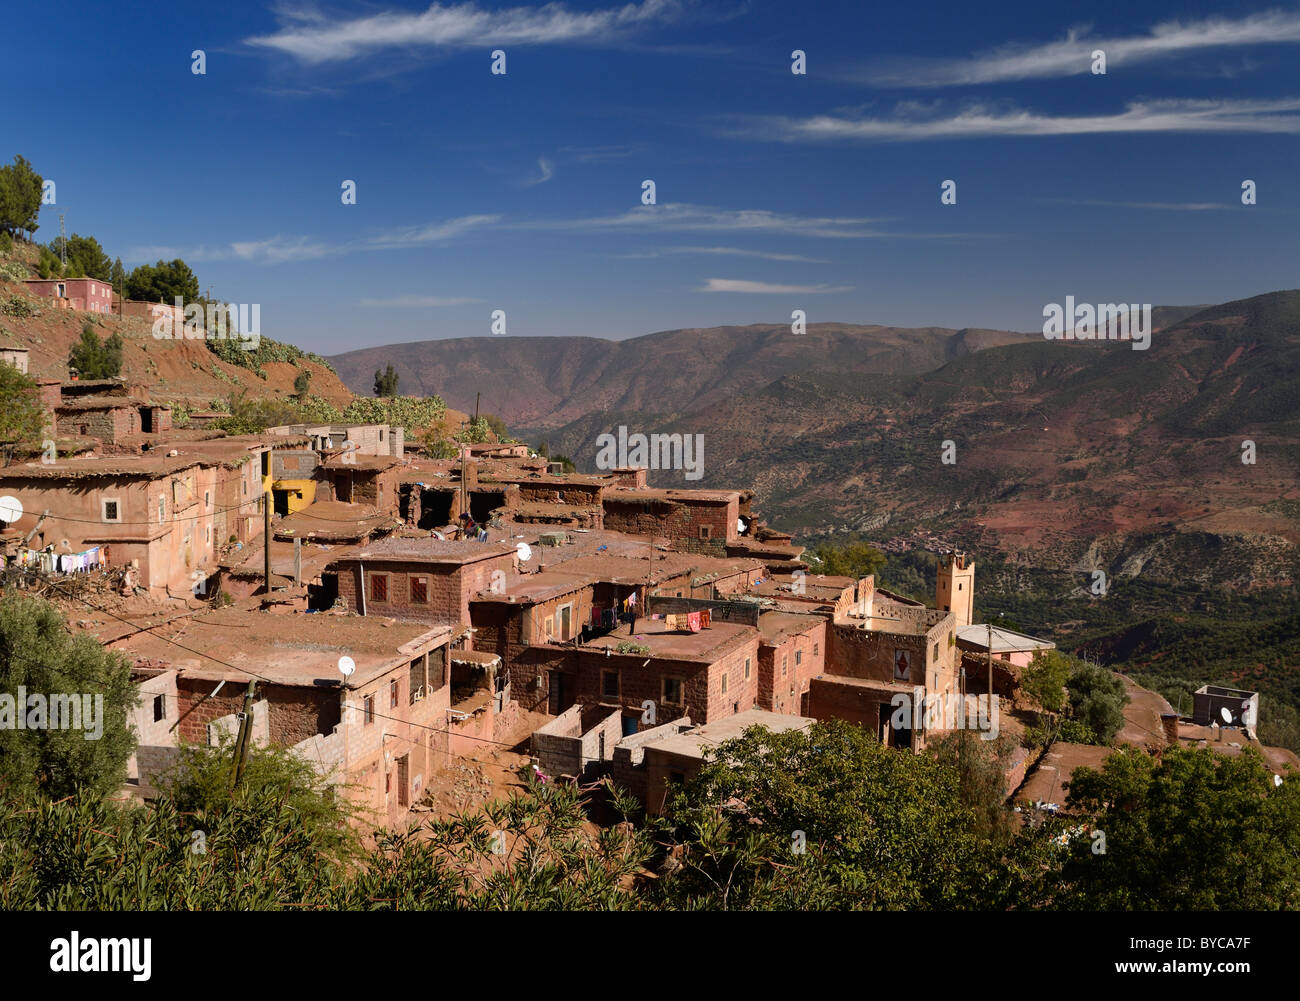 Remoto villaggio di montagna nei pressi di ait mansour in alto atlante del Marocco Foto Stock